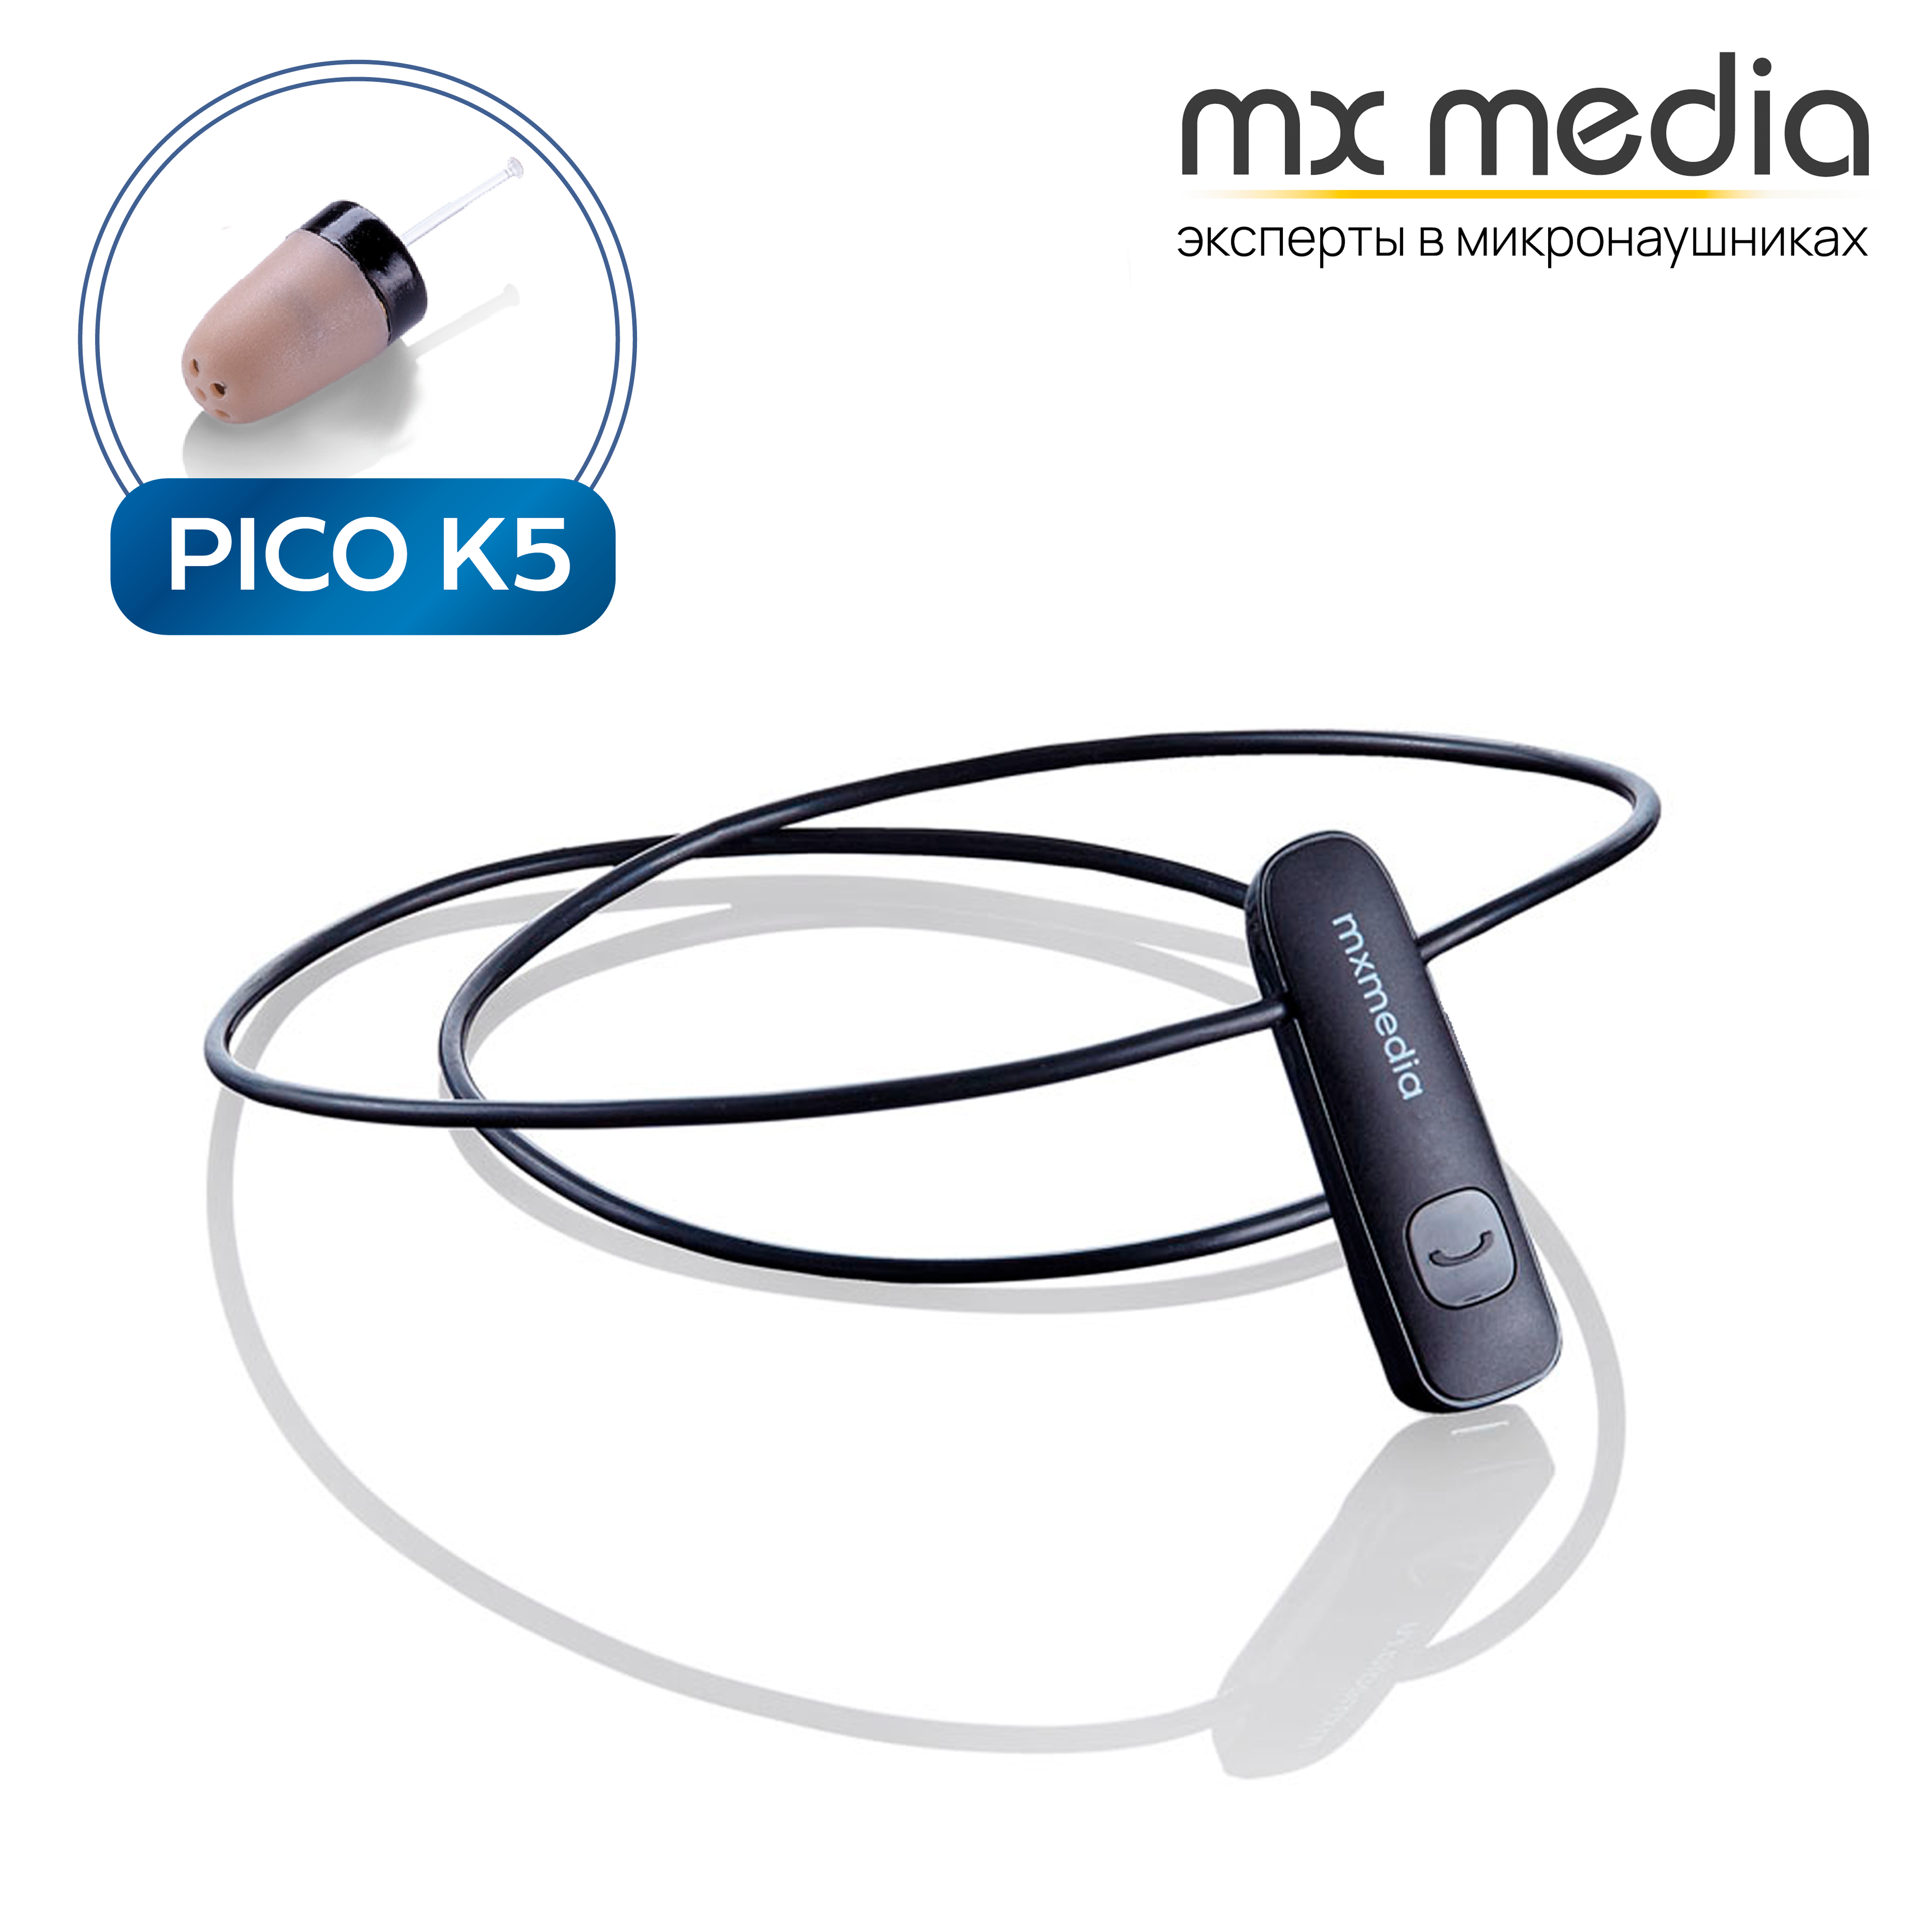 Микронаушник Mxmedia Bluetooth Pico капсульный